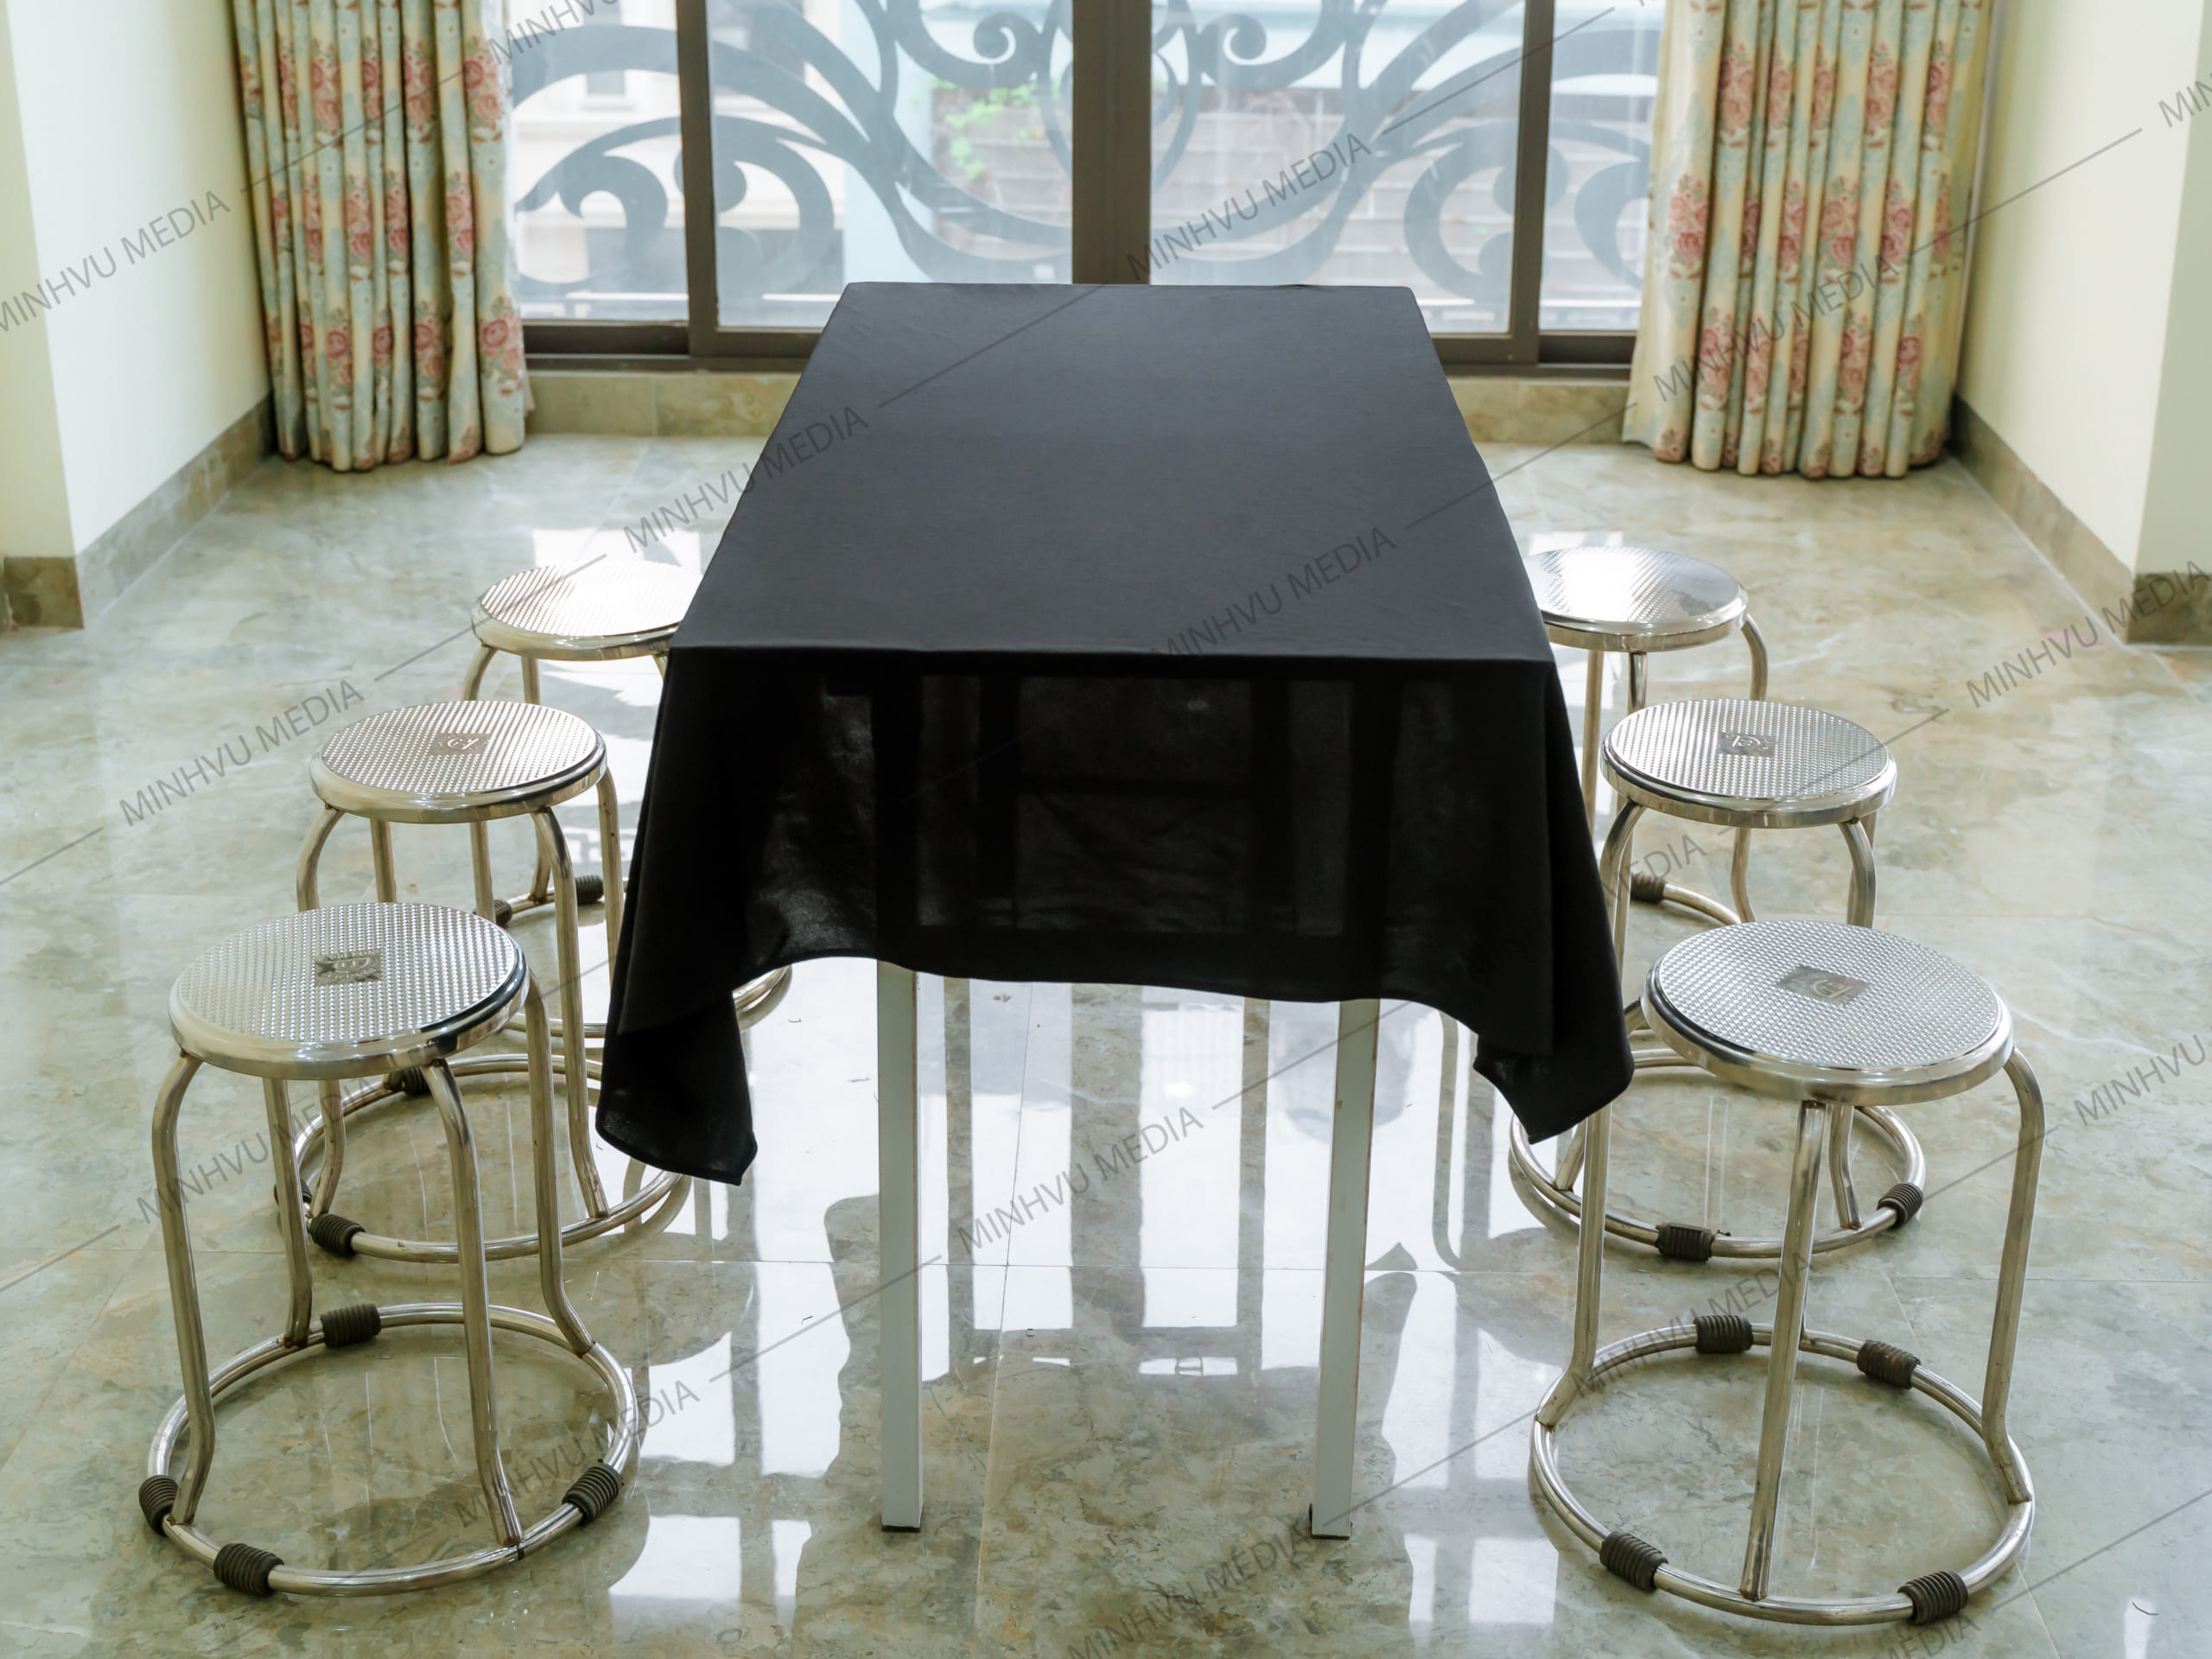 Bộ ghế inox kết hợp bàn chữ nhật phủ khăn trải bàn đen